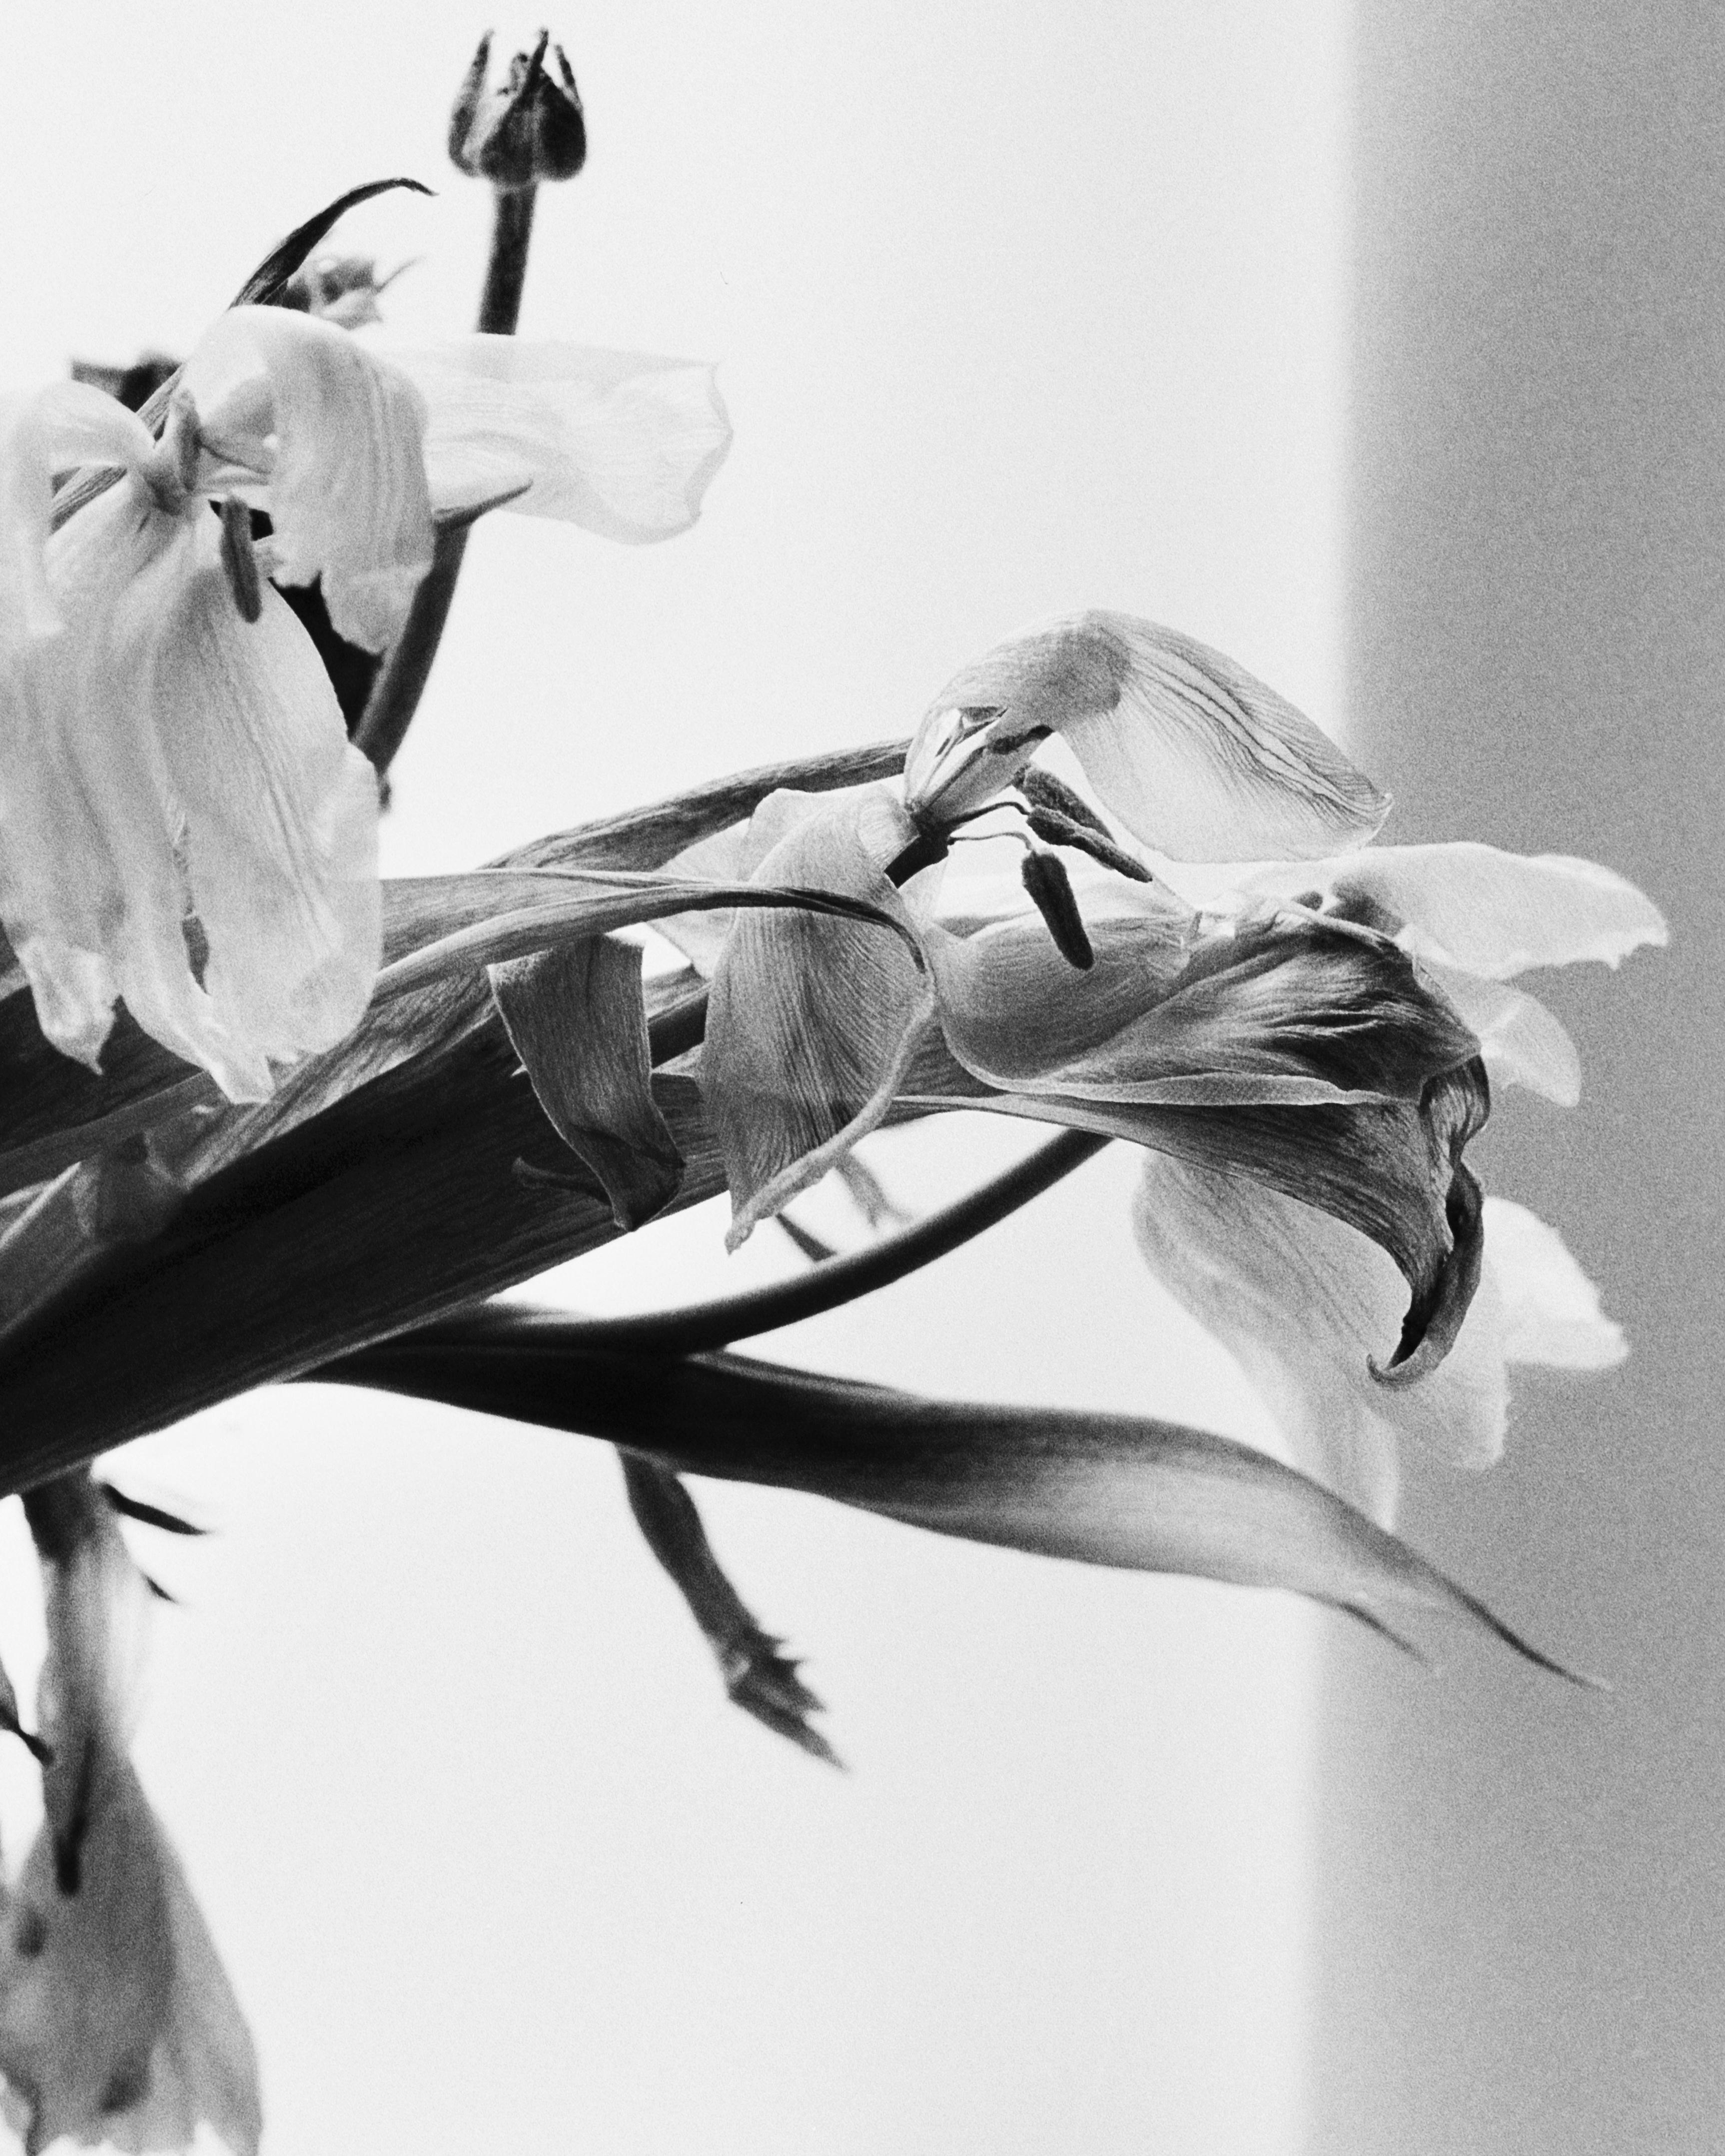 Dead Blumen, Schwarz-Weiß- analoge Blumenfotografie, limitierte Auflage von 20 Stück (Zeitgenössisch), Photograph, von Ugne Pouwell